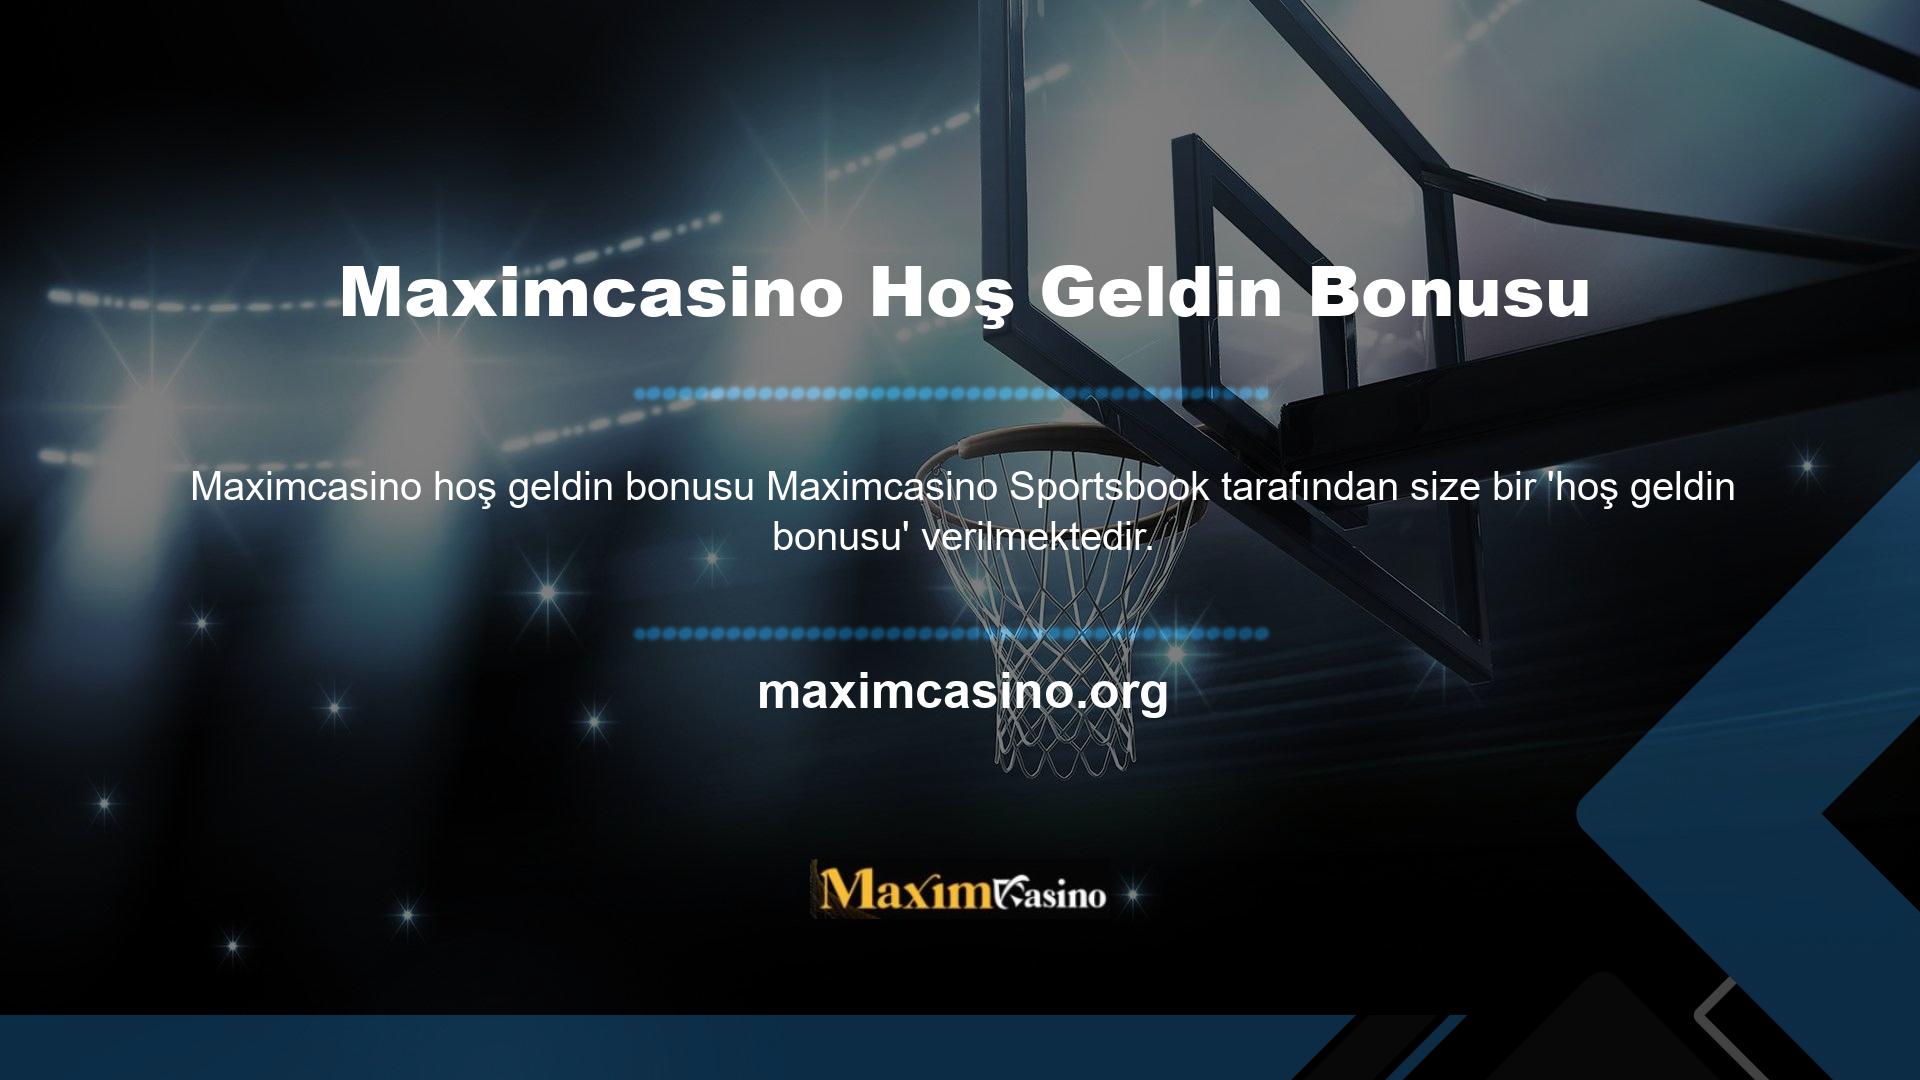 Bonusu yalnızca Maximcasino canlı destek hattı üzerinden kayıt yaptırarak elde edebilirsiniz